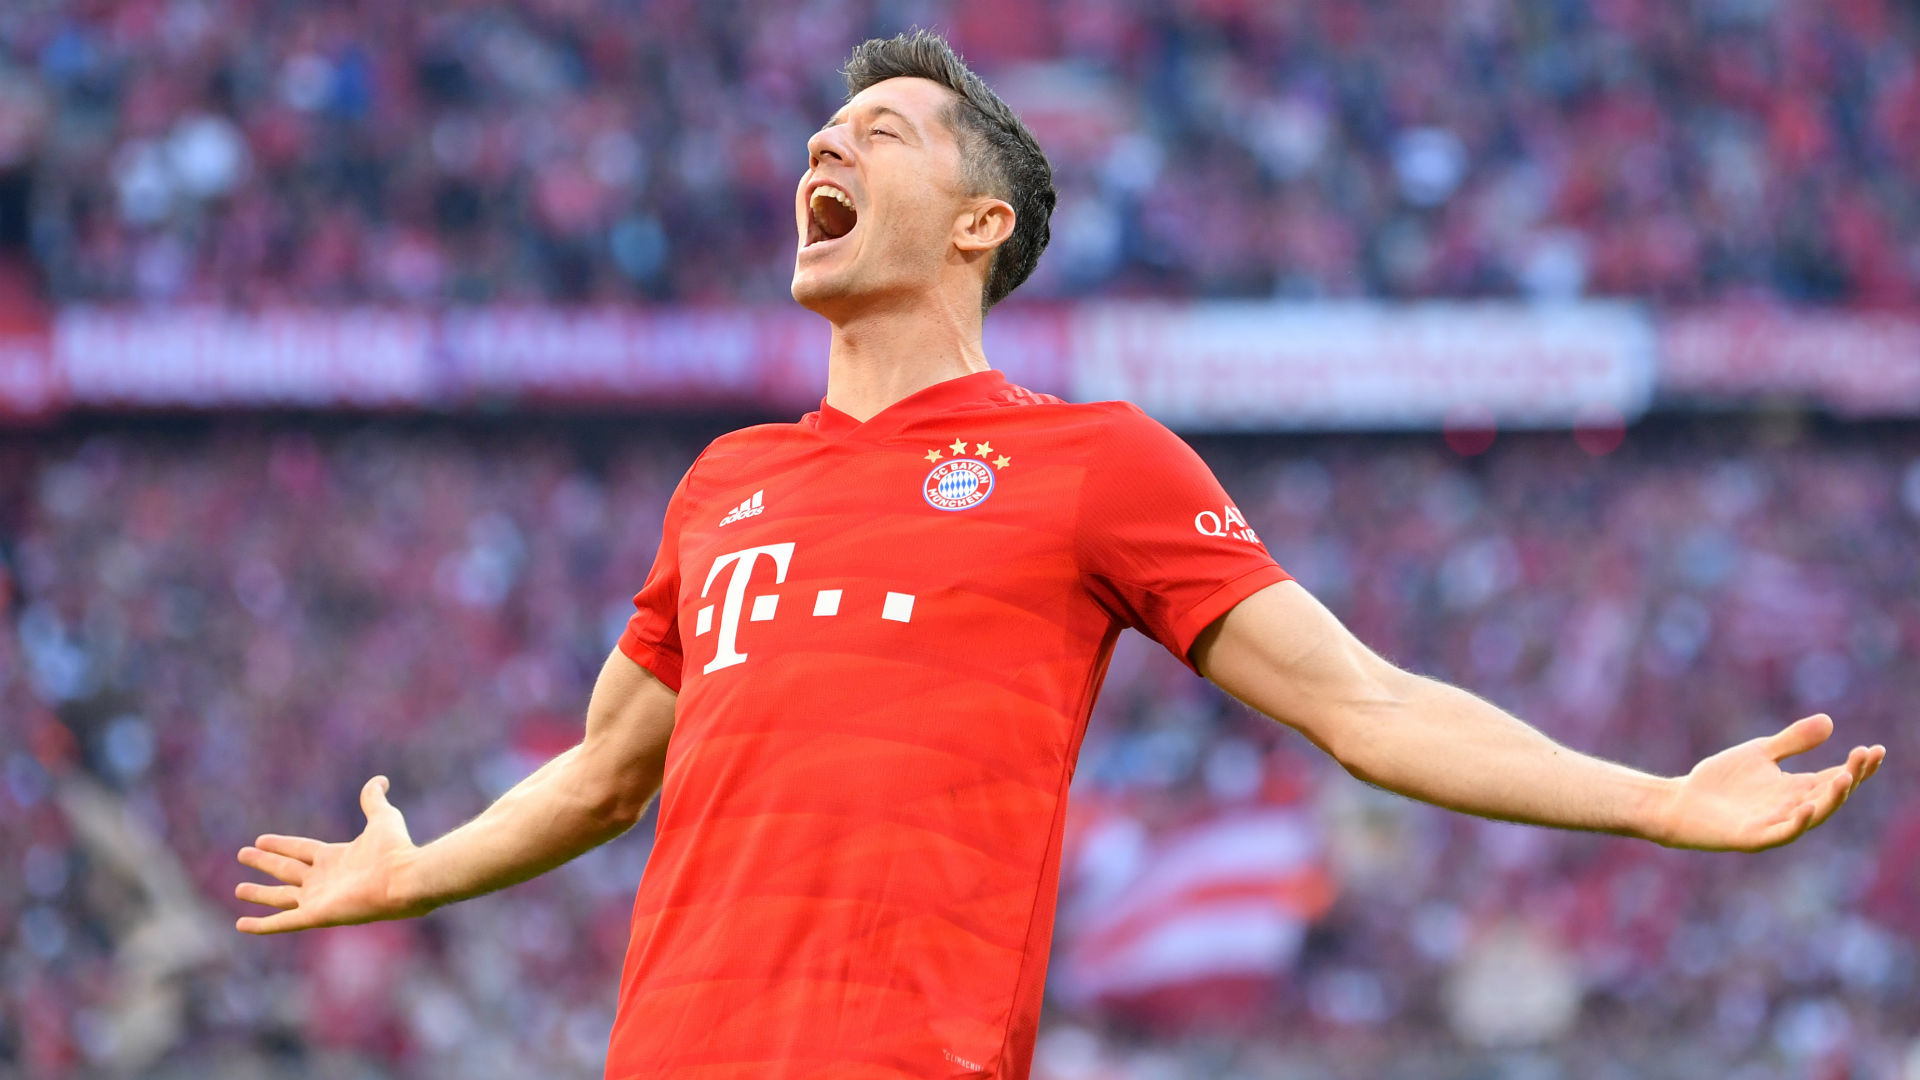 Superbe enchaînement de Lewandowski, le Polonais met le Bayern sur orbite 0-1 (Vidéo)